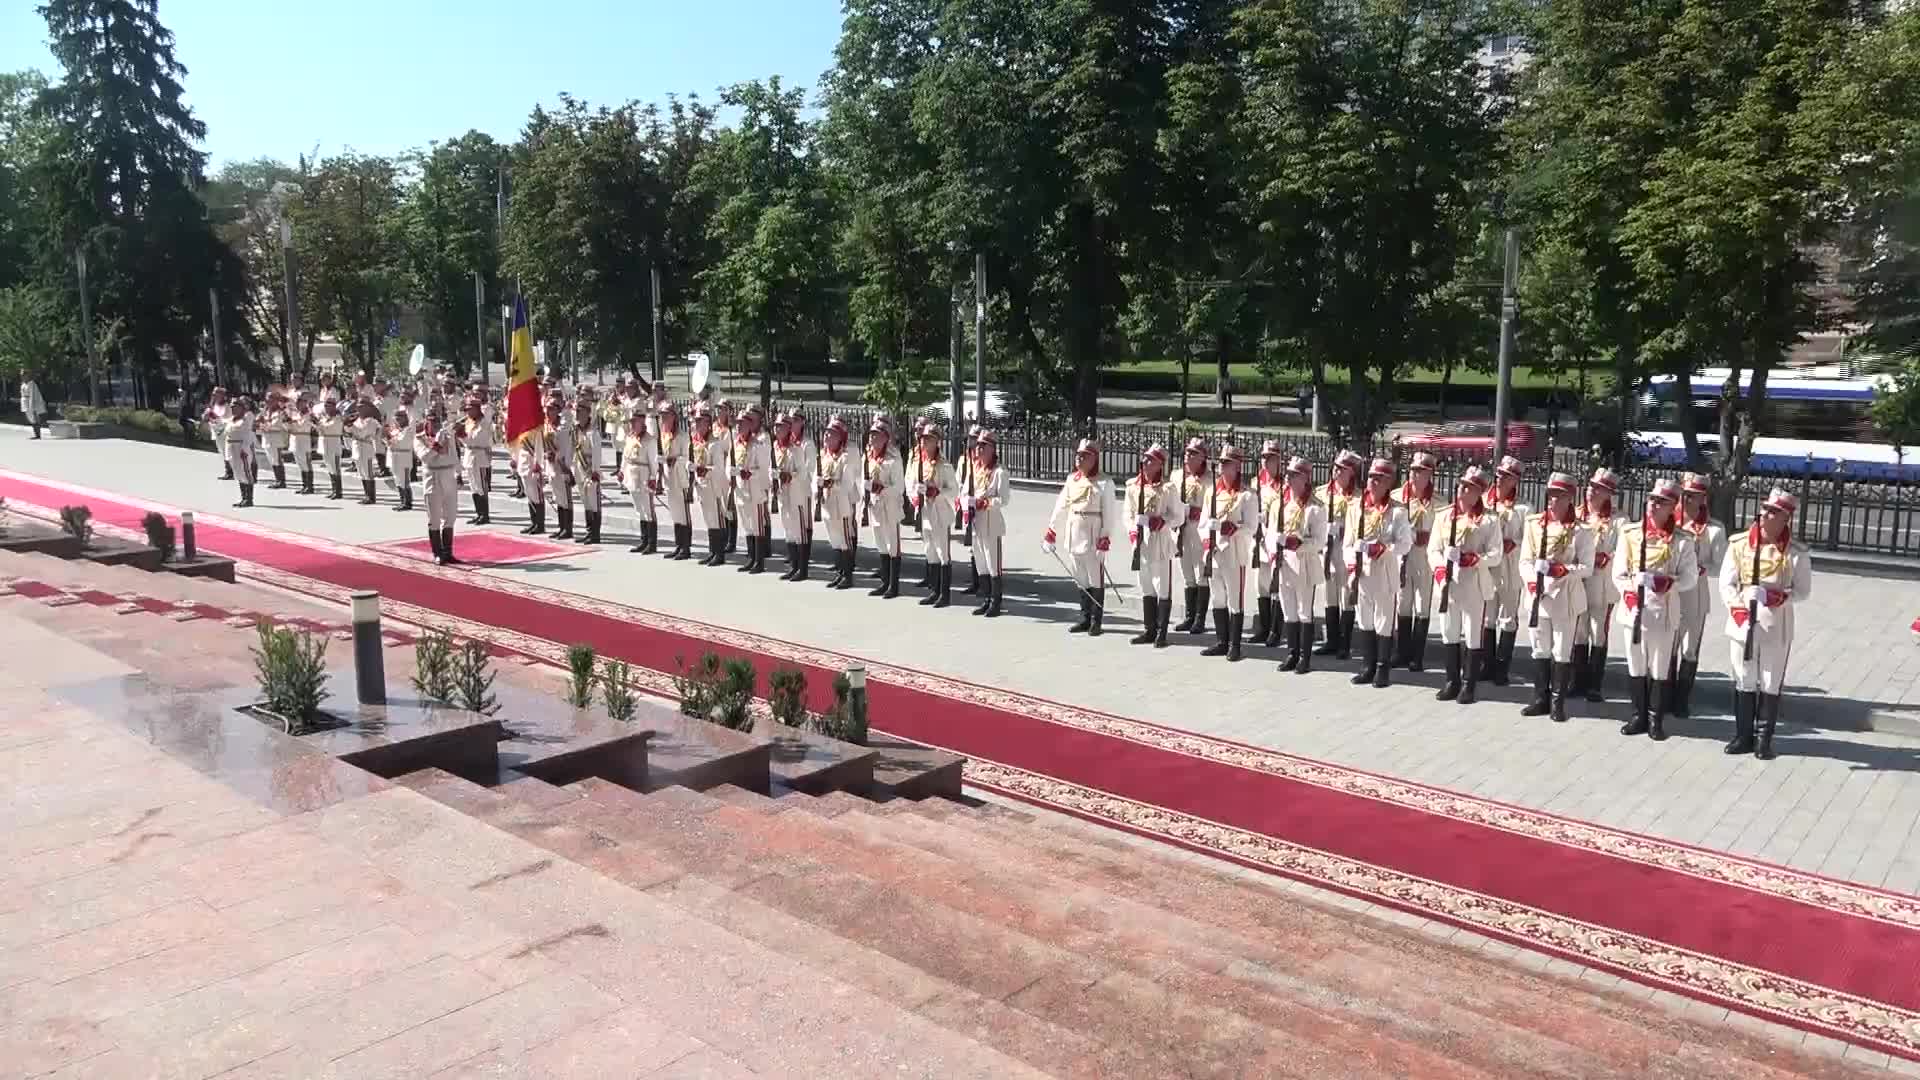 Ceremonia oficială de întâmpinare a Președintelui Republicii Italiene, Sergio Mattarella, de către Președinta Republicii Moldova, Maia Sandu